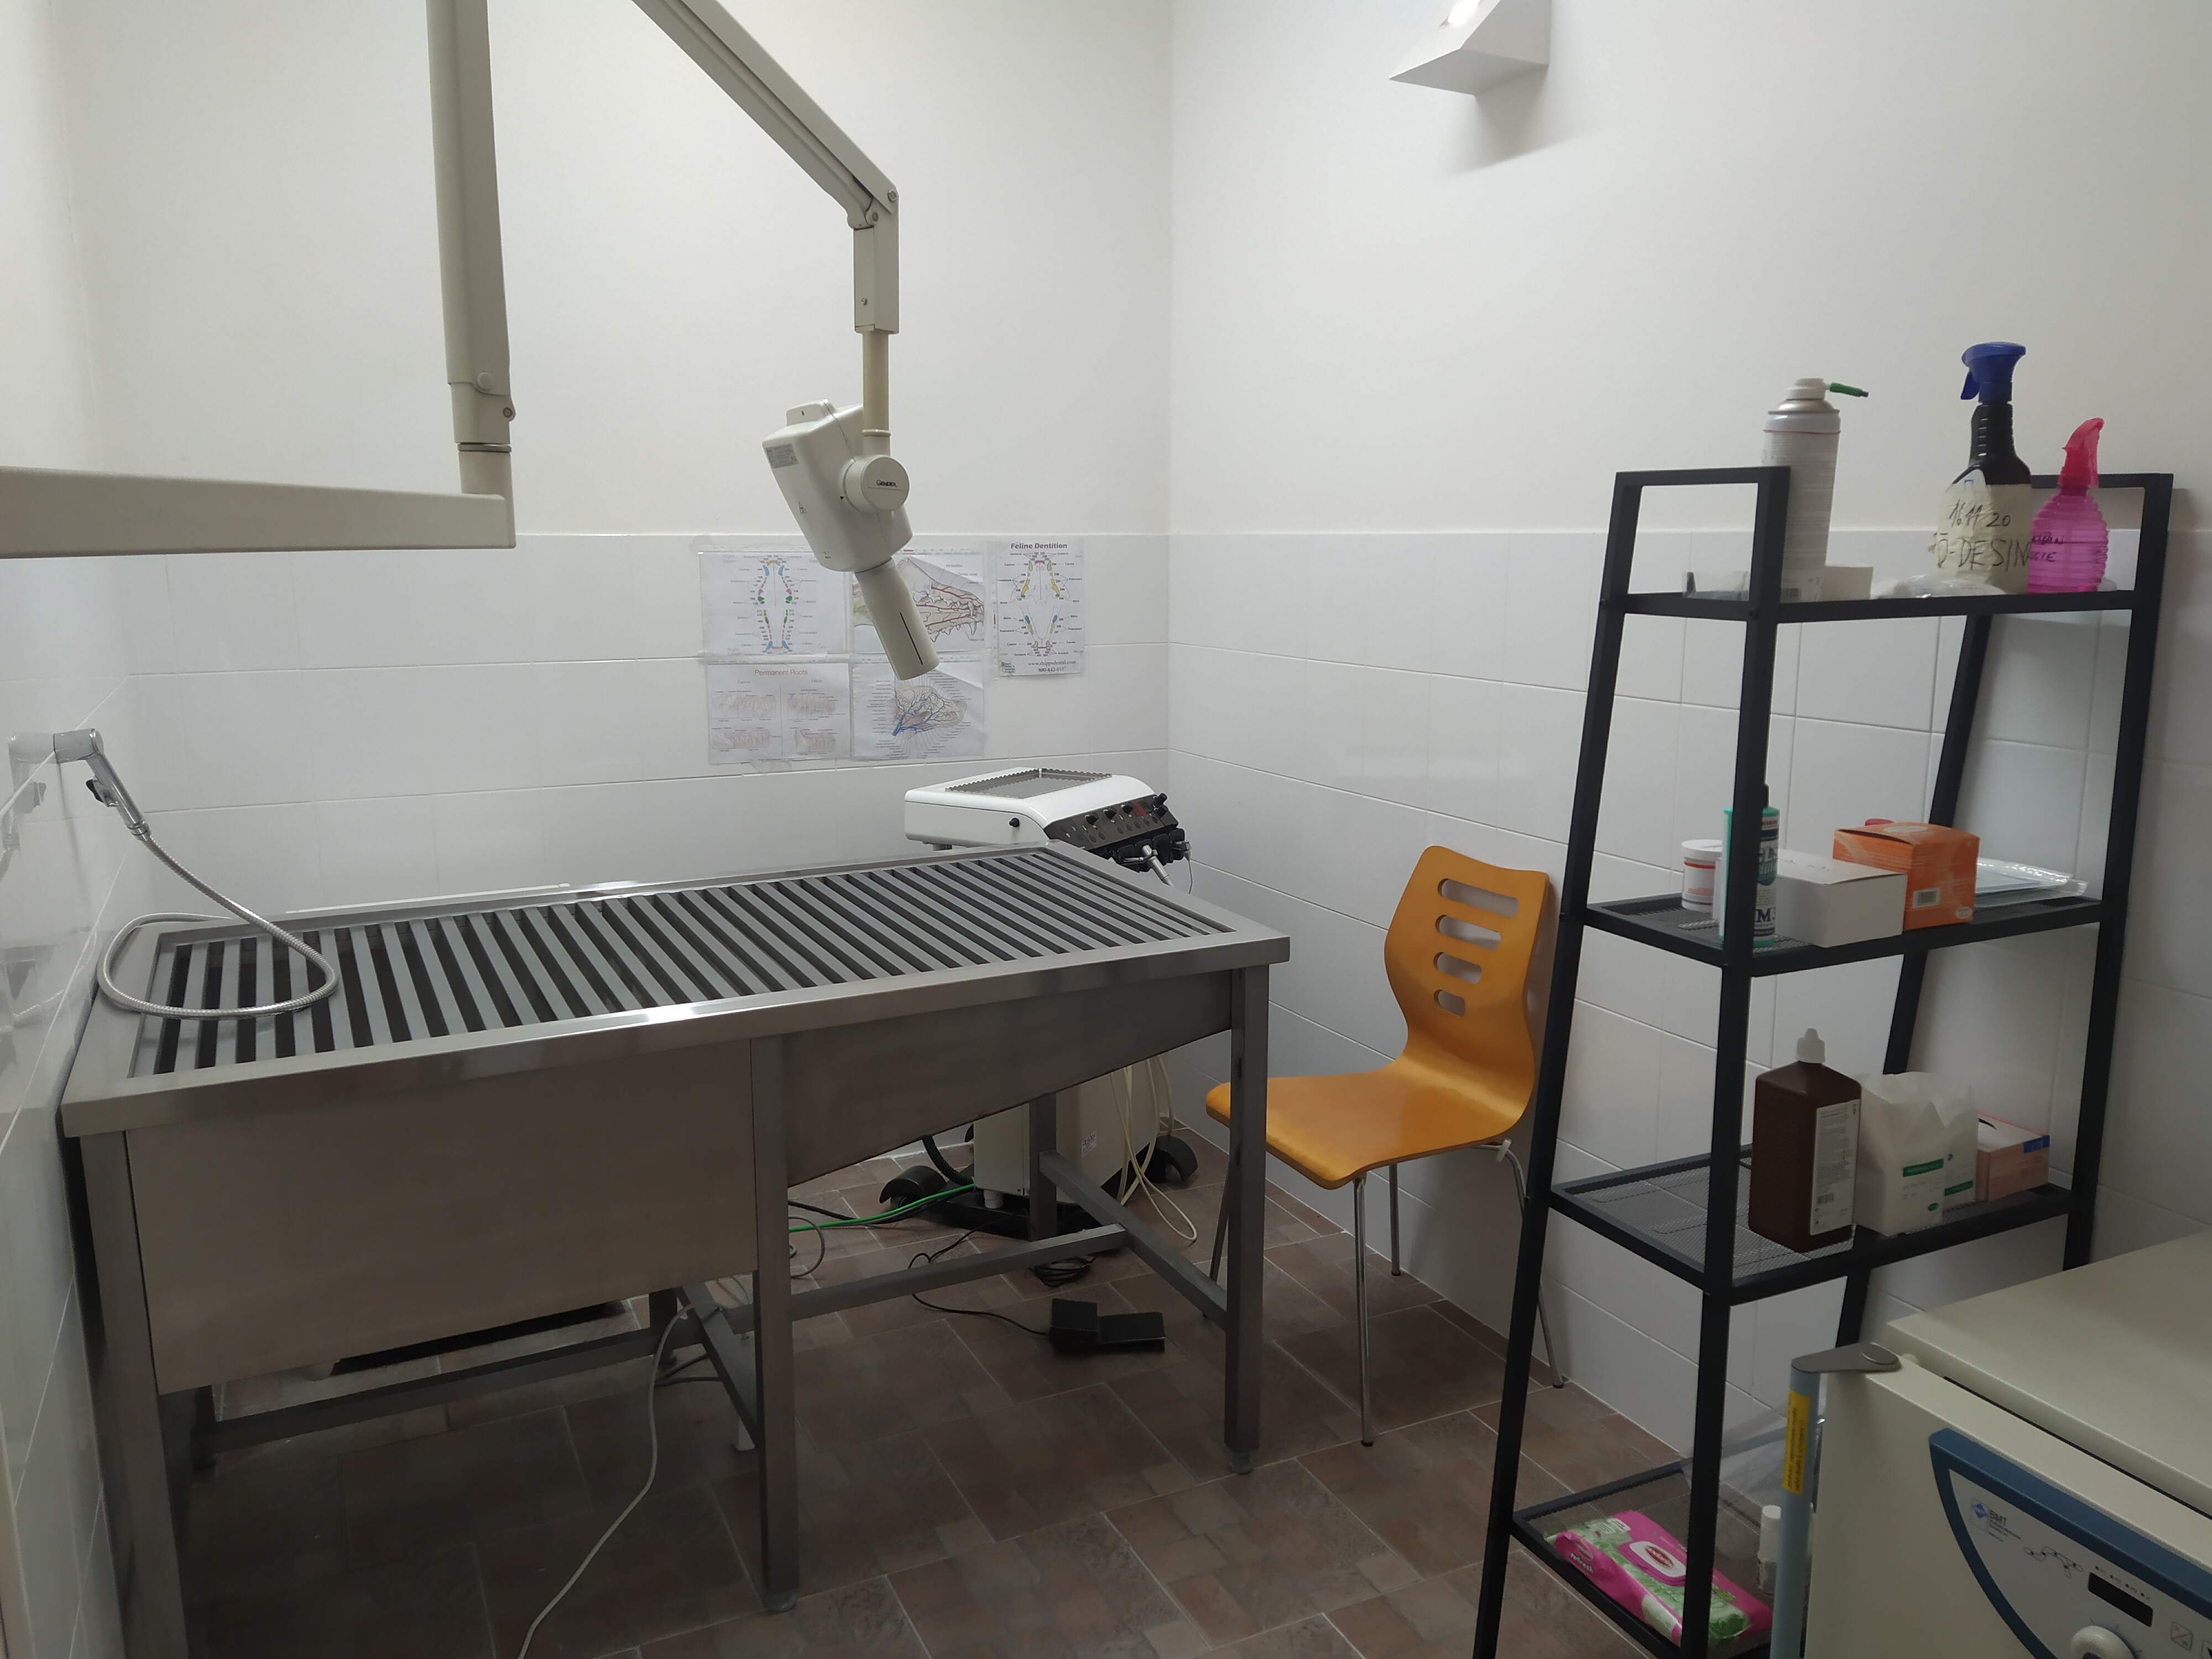 V roudnické ordinaci máme veškeré vybavení k základní stomatologii - jednotka, intraorální RTG, stůl